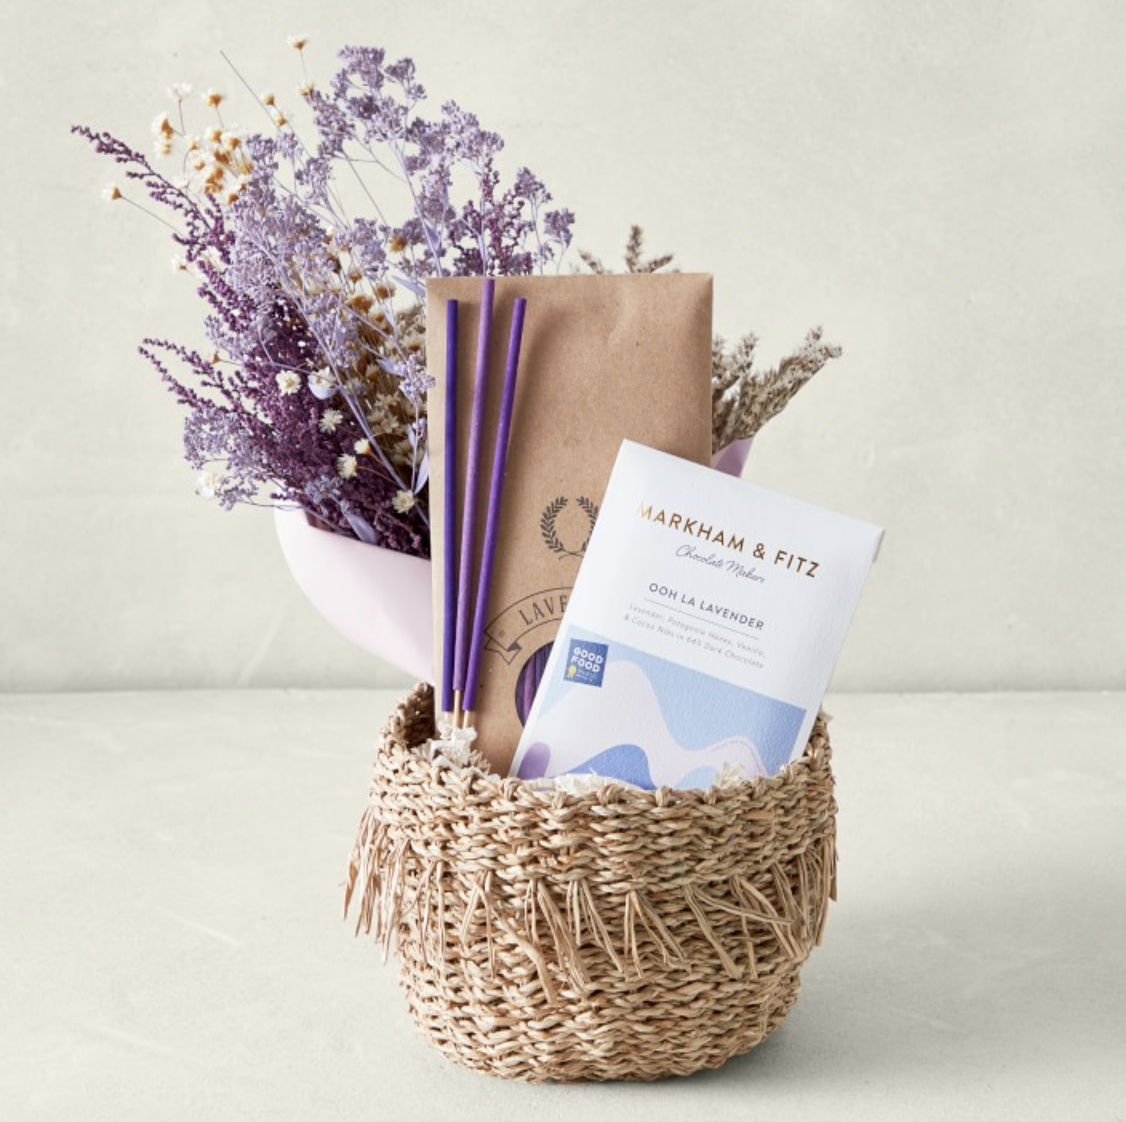 flower gift basket